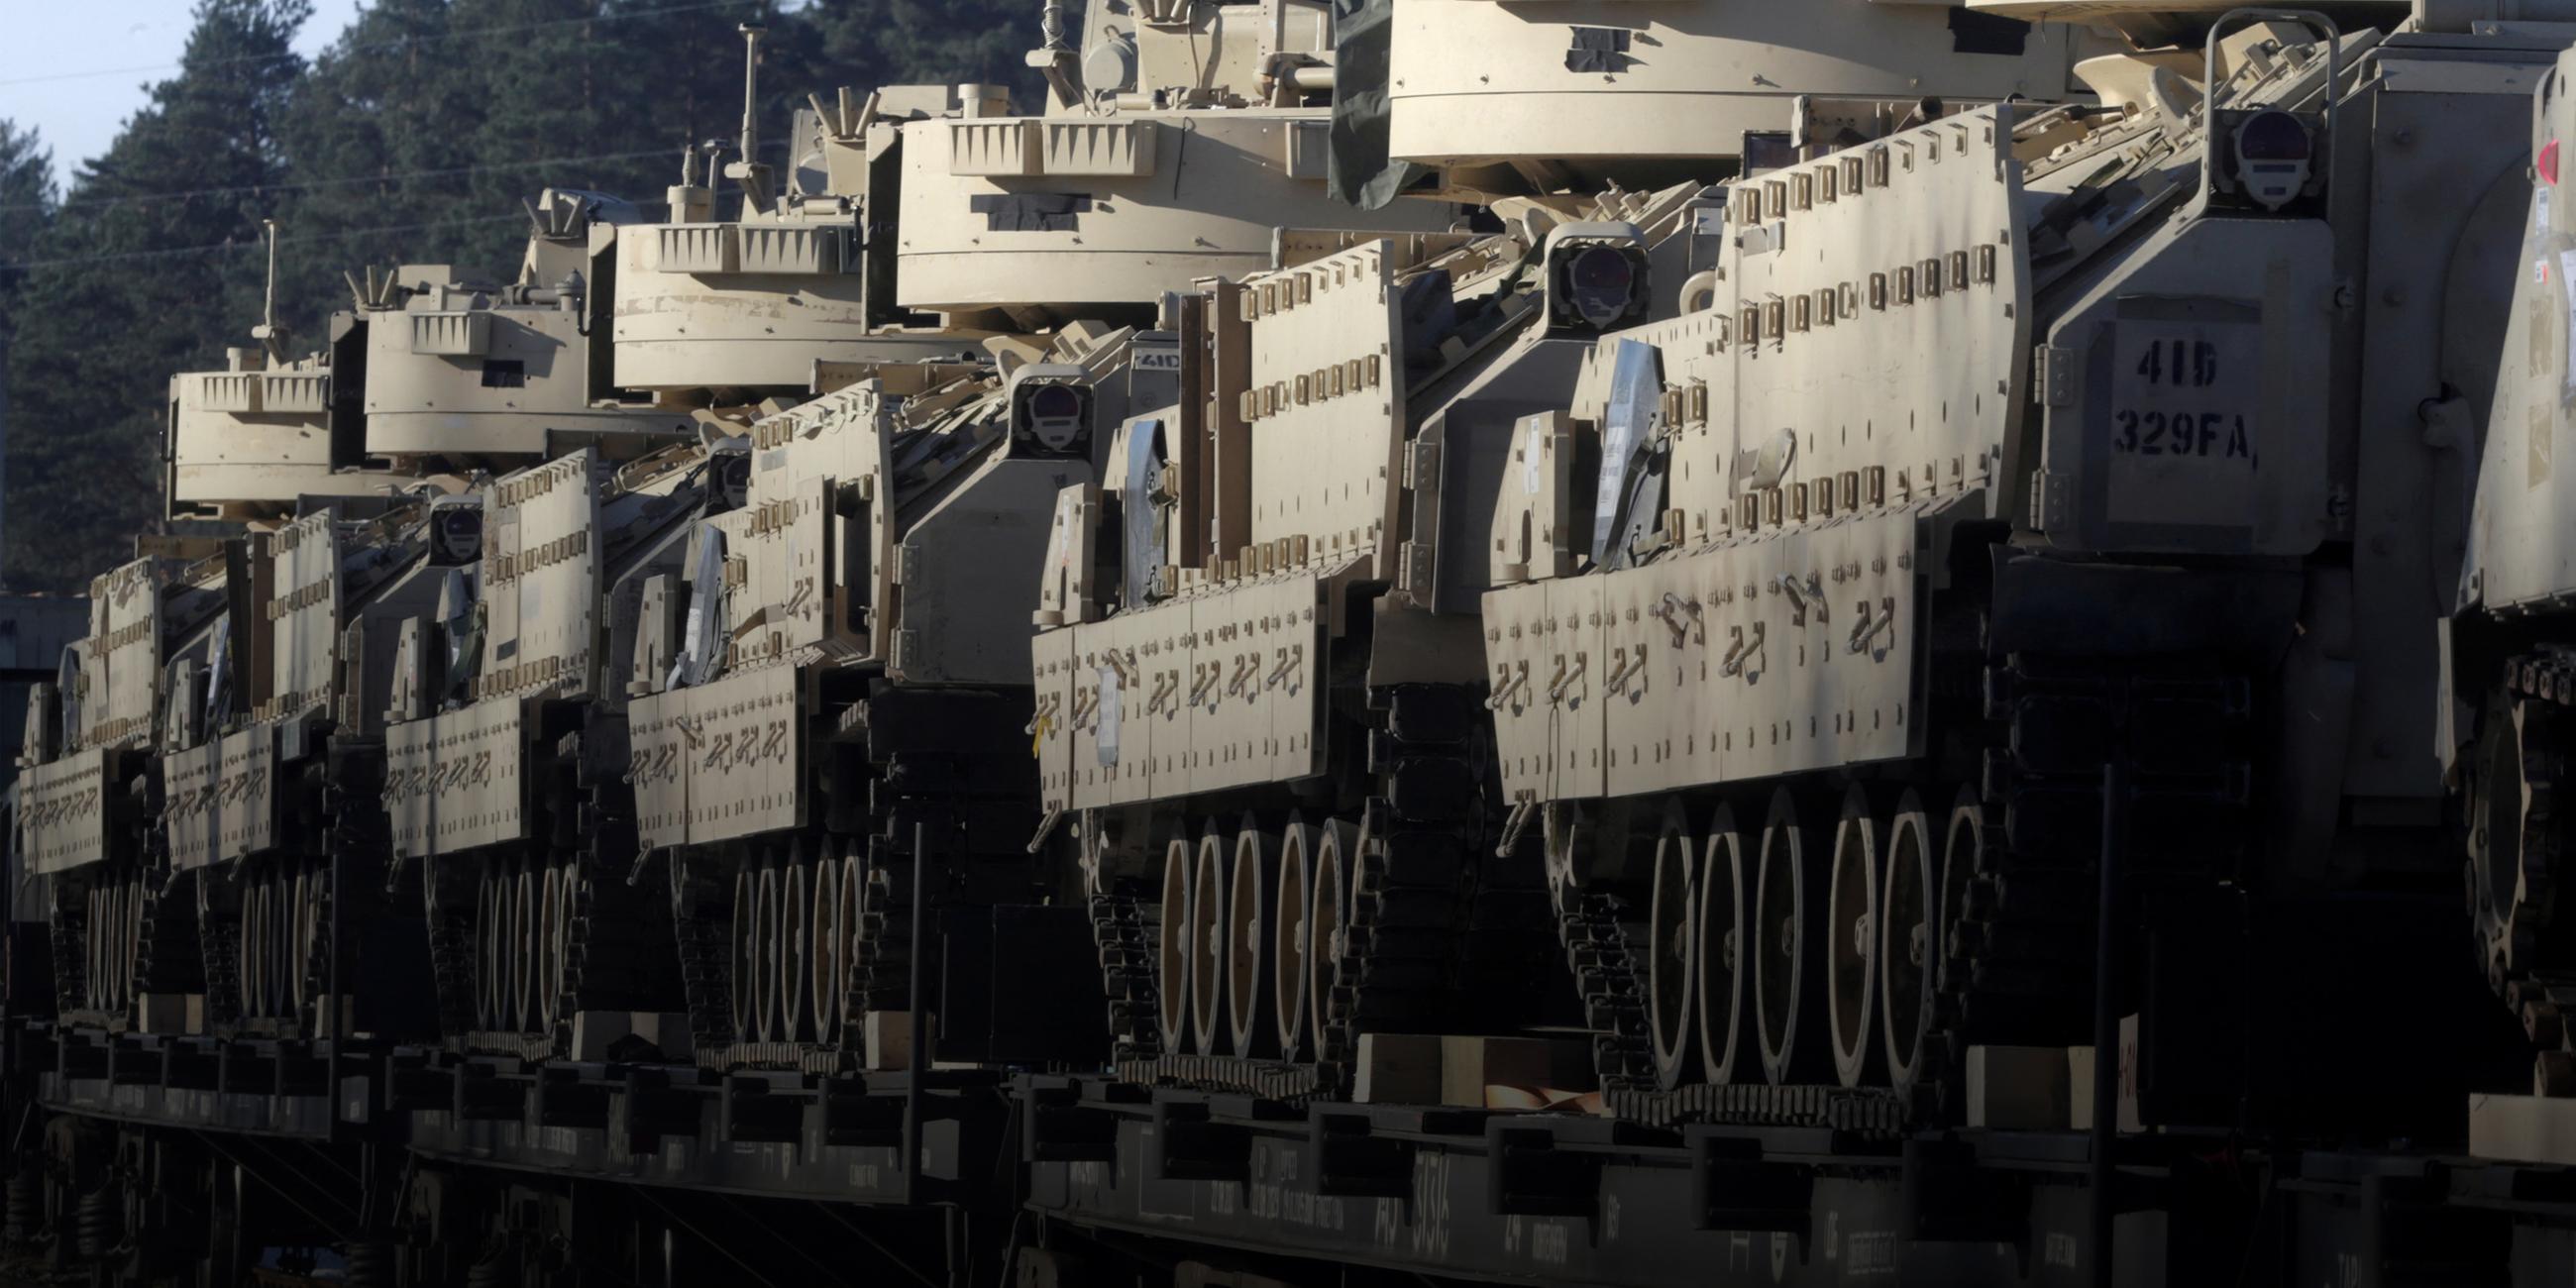 Archiv: US-Bradley-Kampffahrzeuge auf dem Weg zu einer NATO Übung